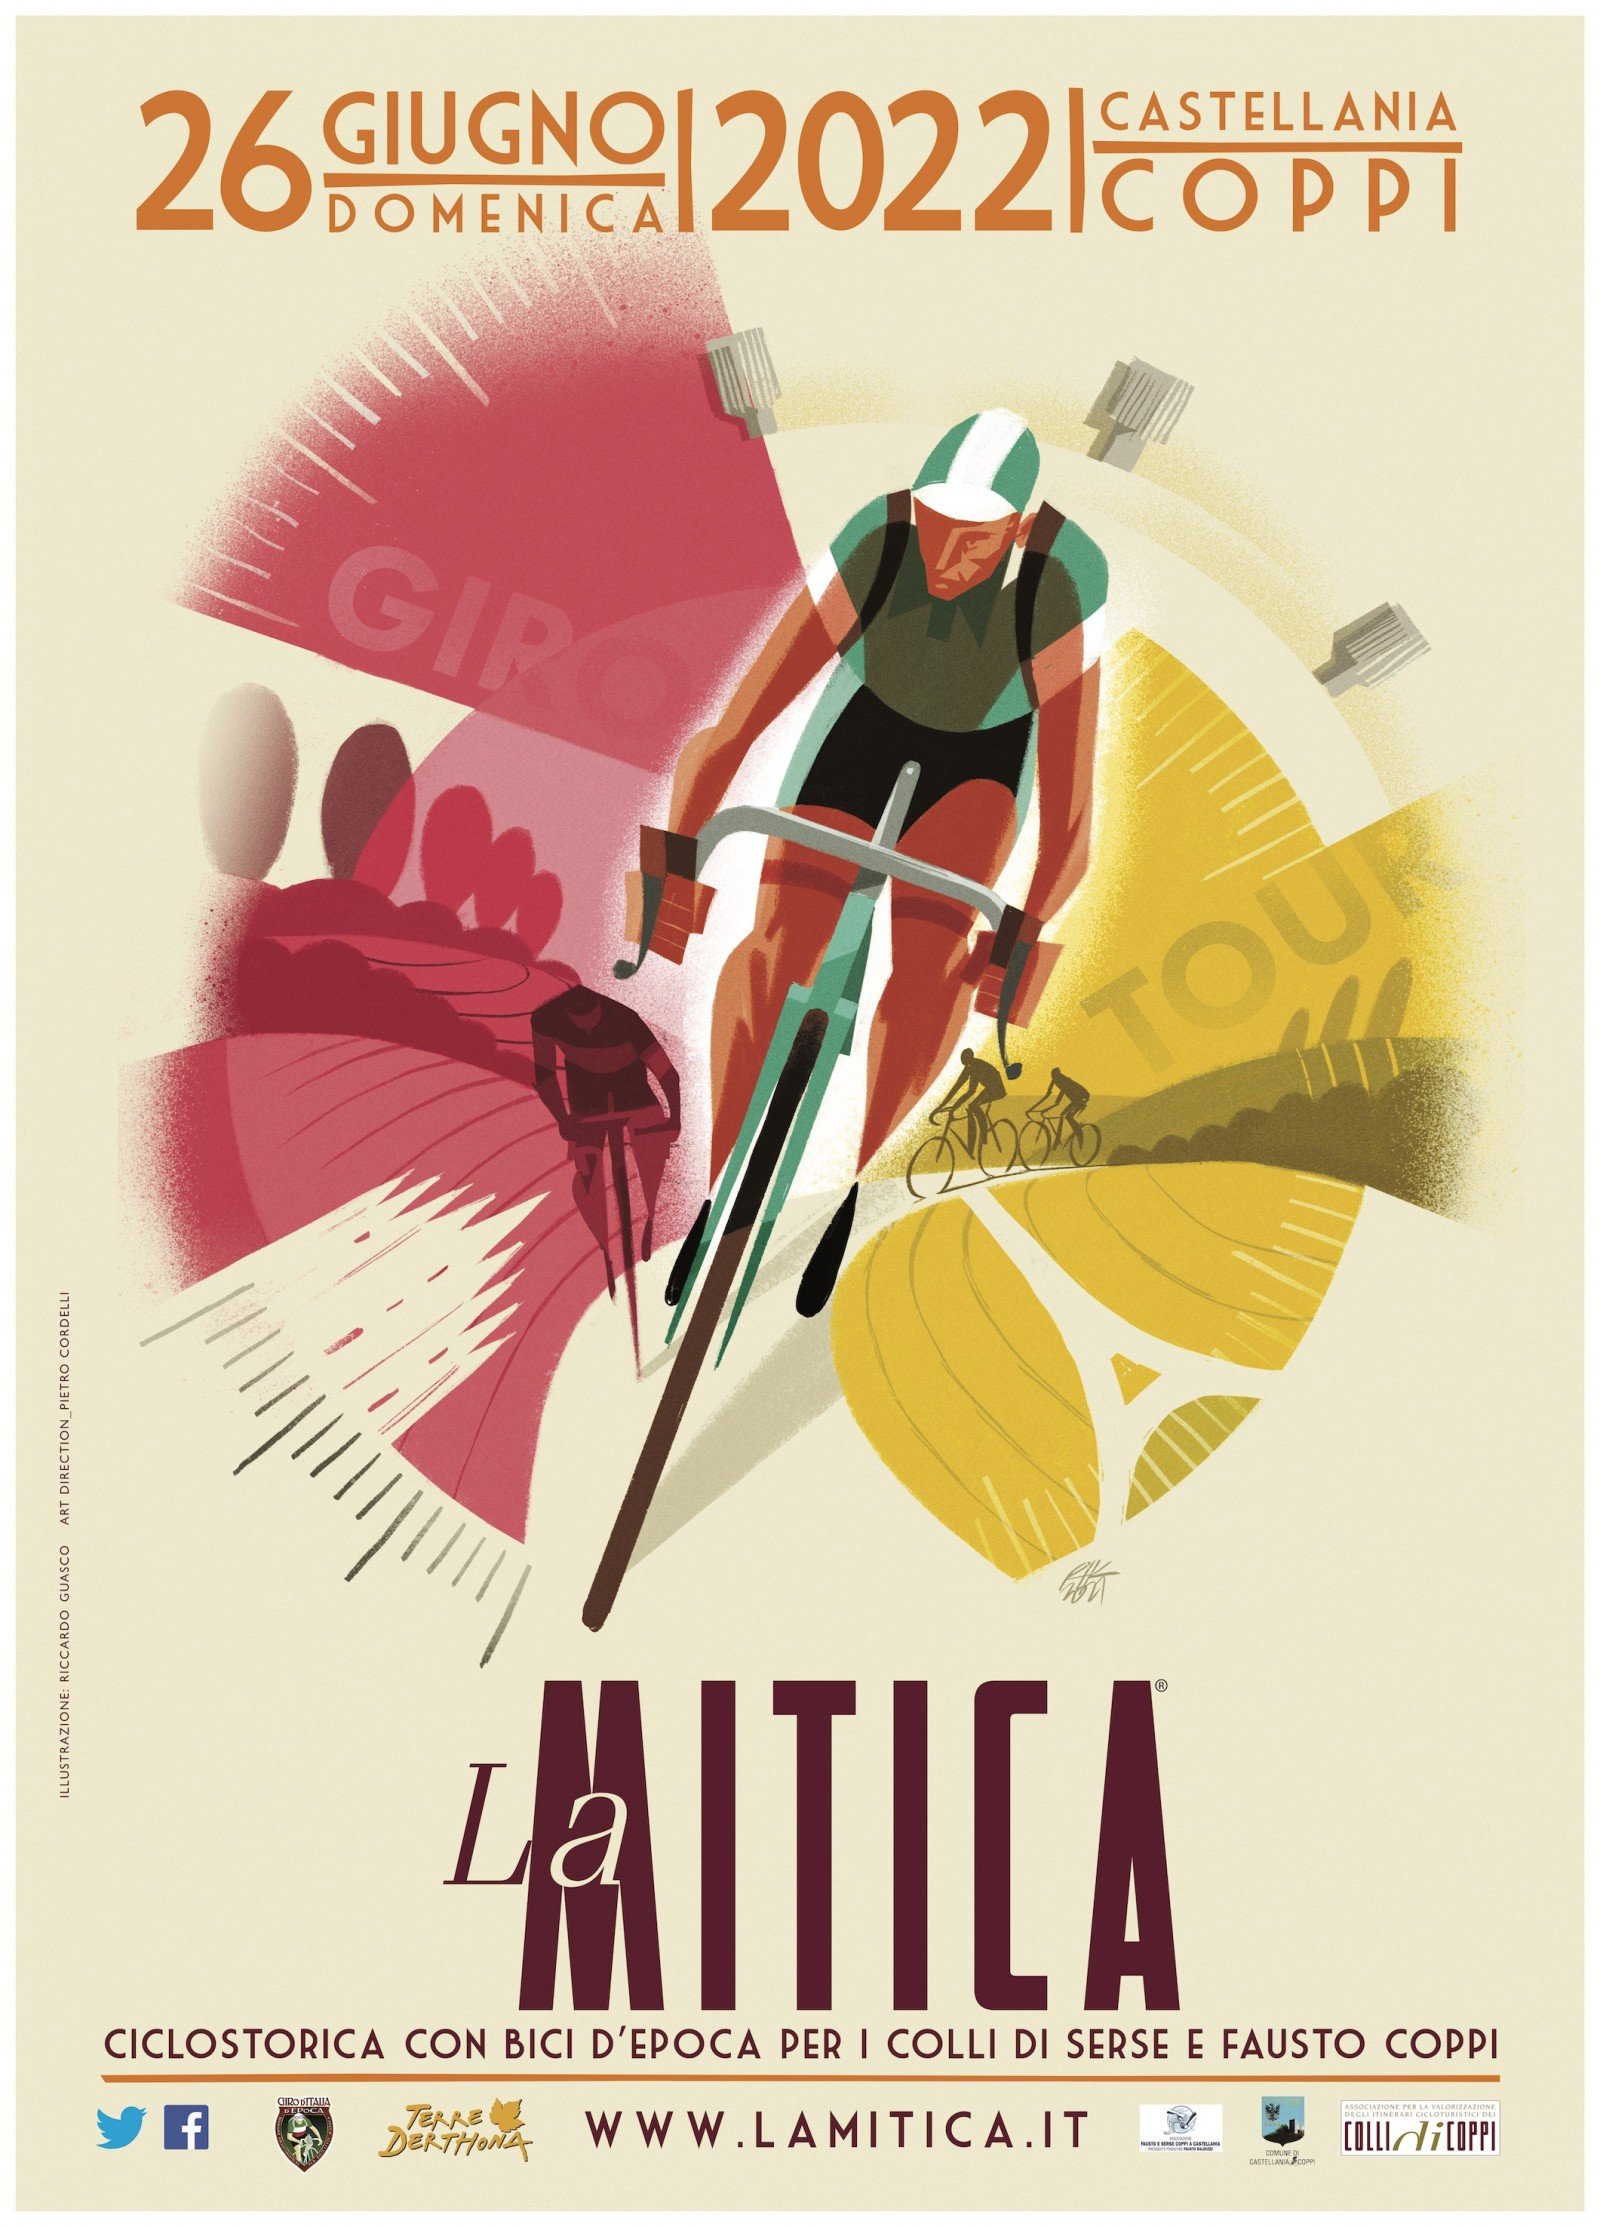 Il 26 giugno “La Mitica” la Ciclostorica con bici d’epoca per i colli di Serse e Fausto Coppi